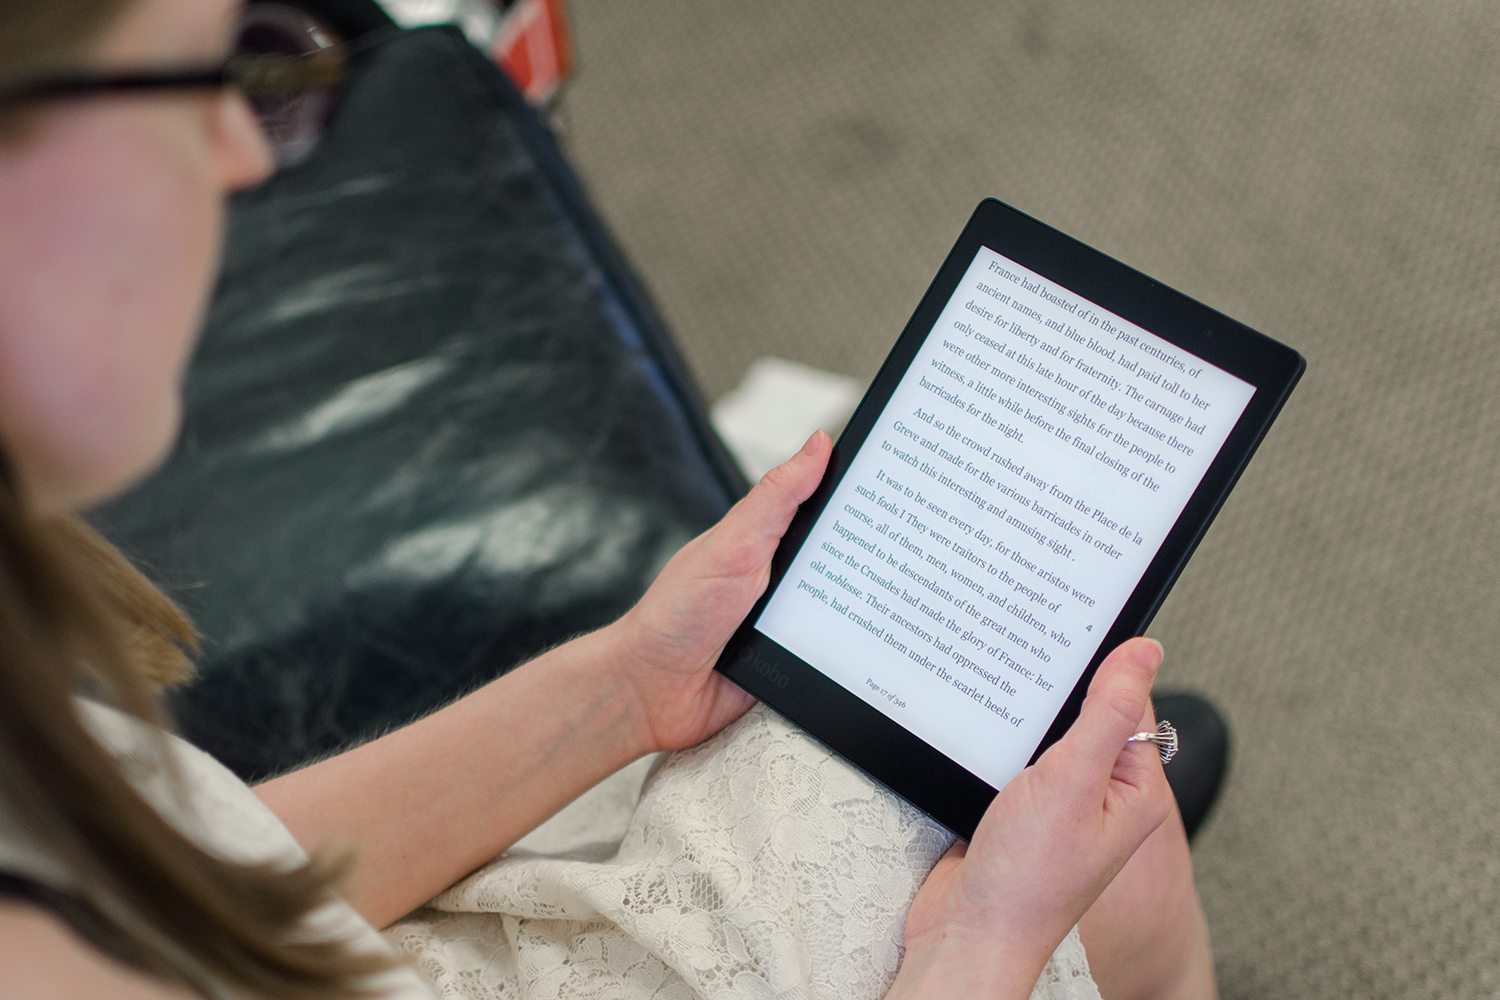 Comparatif iBooks / Kindle sur iPad (en vidéo) - Actu des ebooks